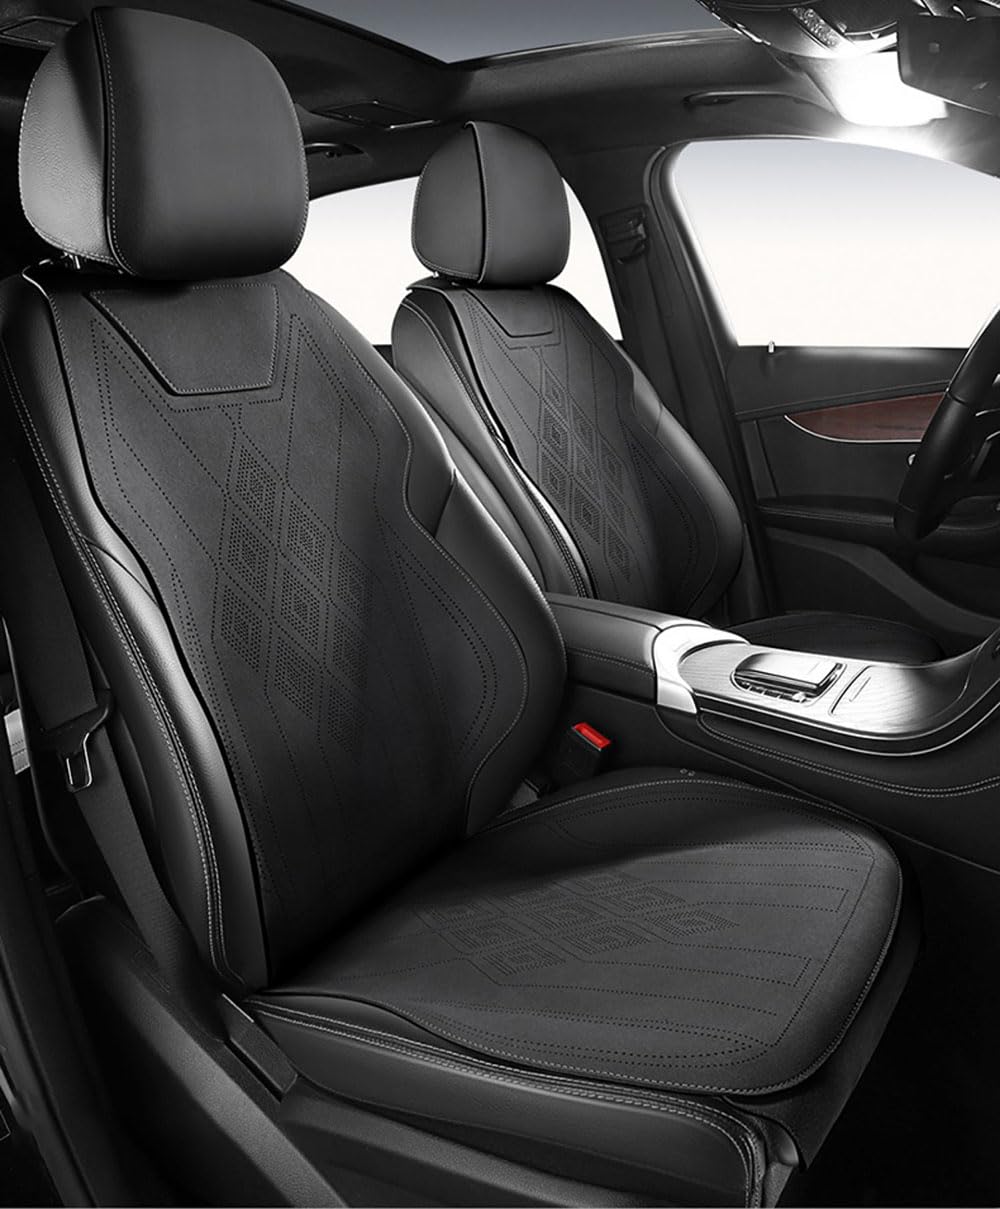 TQWUY Auto Sitzbezüge Sets für Hyundai Santa Fe 2013 5-Sitze vorne und hinten Wasserdicht Verschleißfest Innenraum Accessories,A-Black-Split type von TQWUY